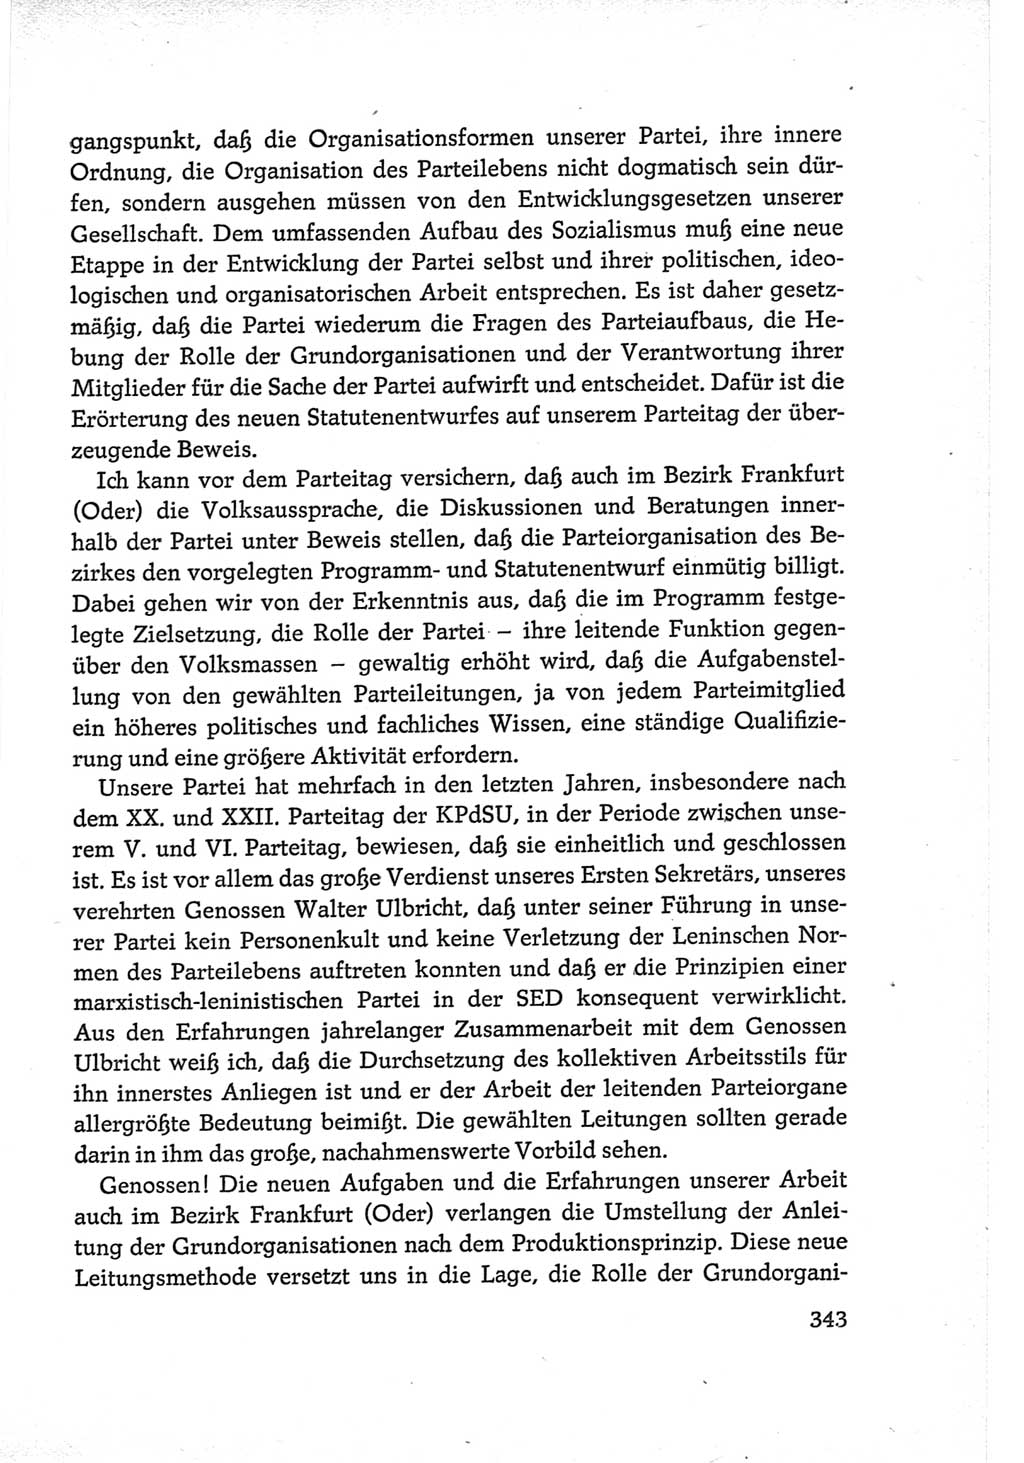 Protokoll der Verhandlungen des Ⅵ. Parteitages der Sozialistischen Einheitspartei Deutschlands (SED) [Deutsche Demokratische Republik (DDR)] 1963, Band Ⅲ, Seite 343 (Prot. Verh. Ⅵ. PT SED DDR 1963, Bd. Ⅲ, S. 343)